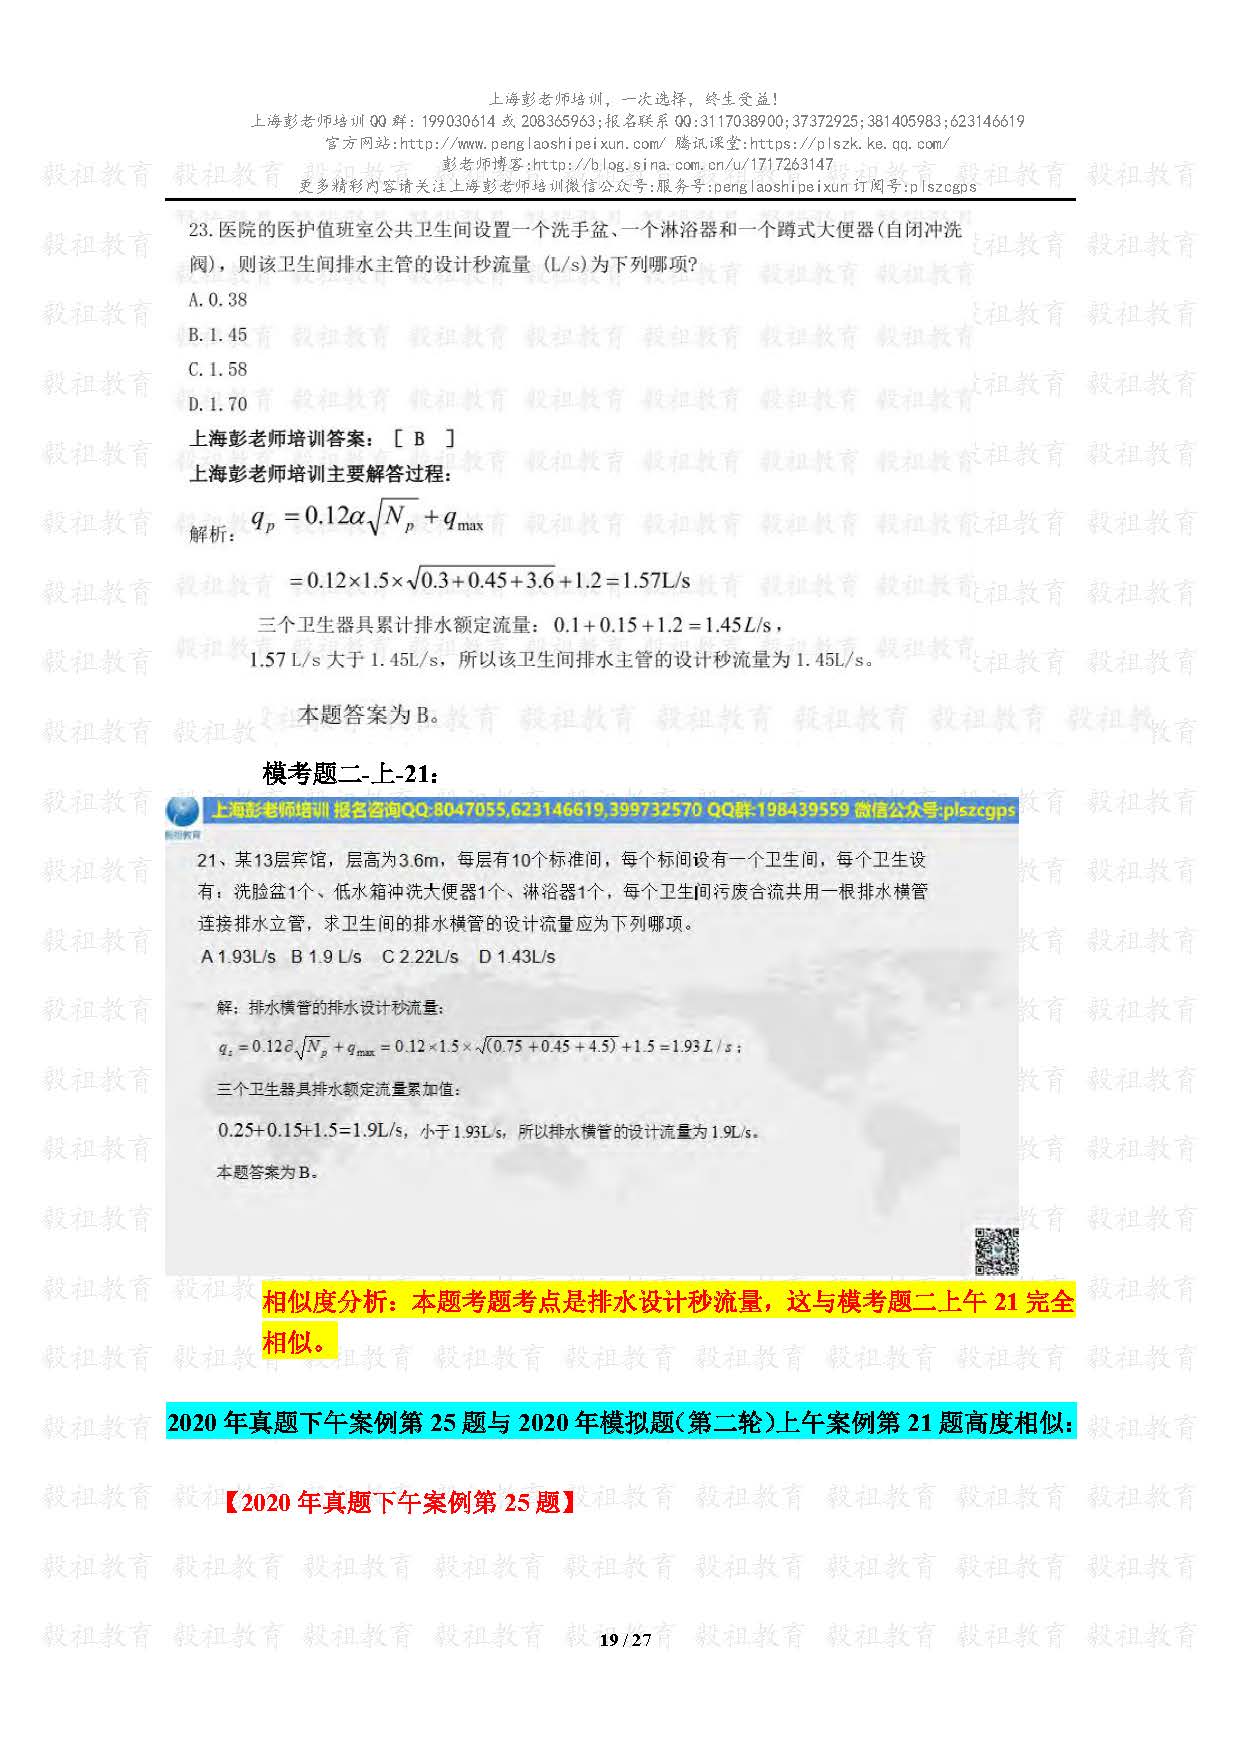 2020注册给排水考试真题与模考题相似度分析-上海彭老师培训_页面_19.jpg.jpg